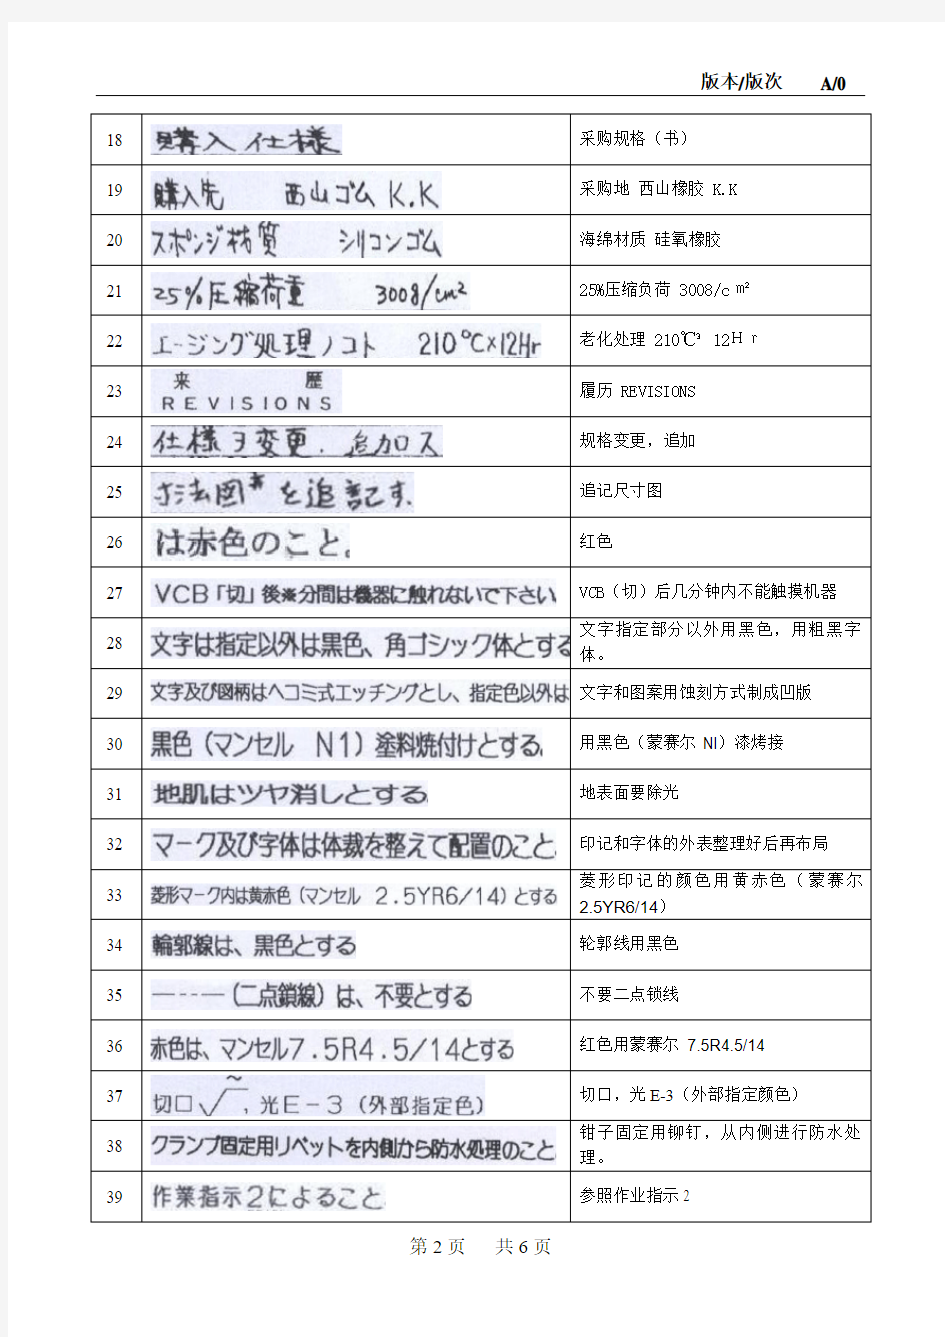 技术图纸中日文翻译对照